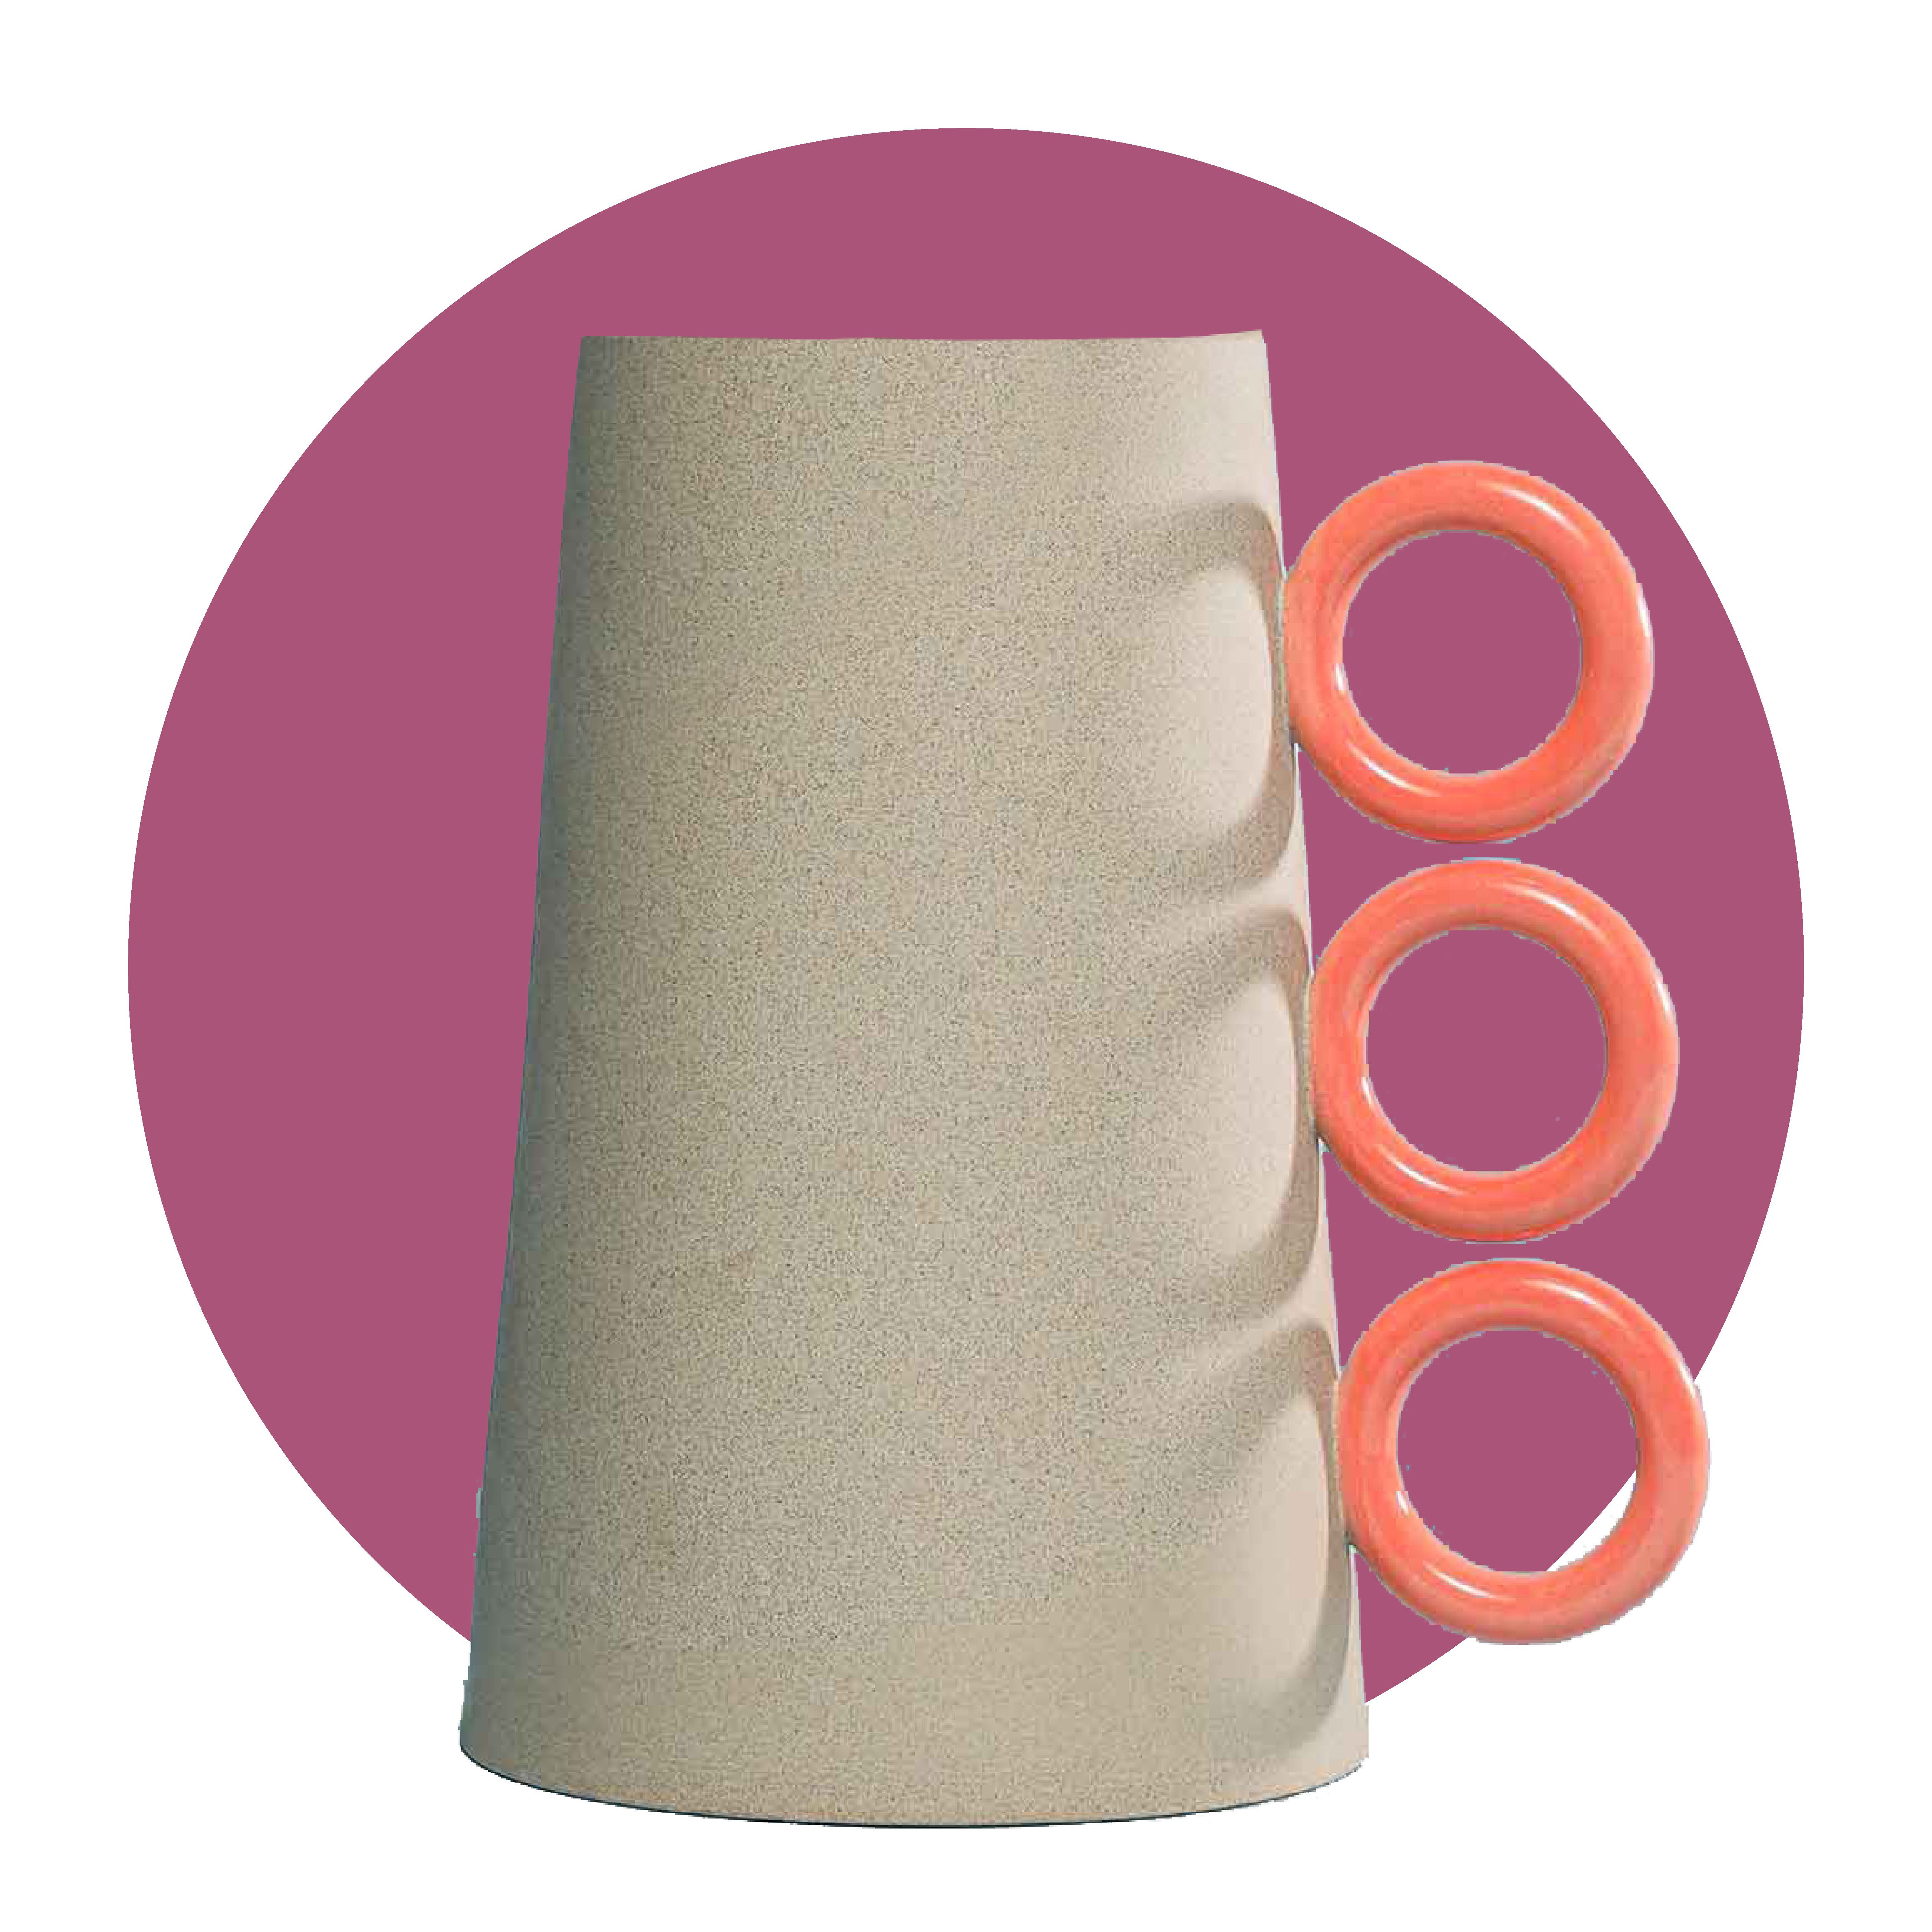 a ceramic vase with orange accents